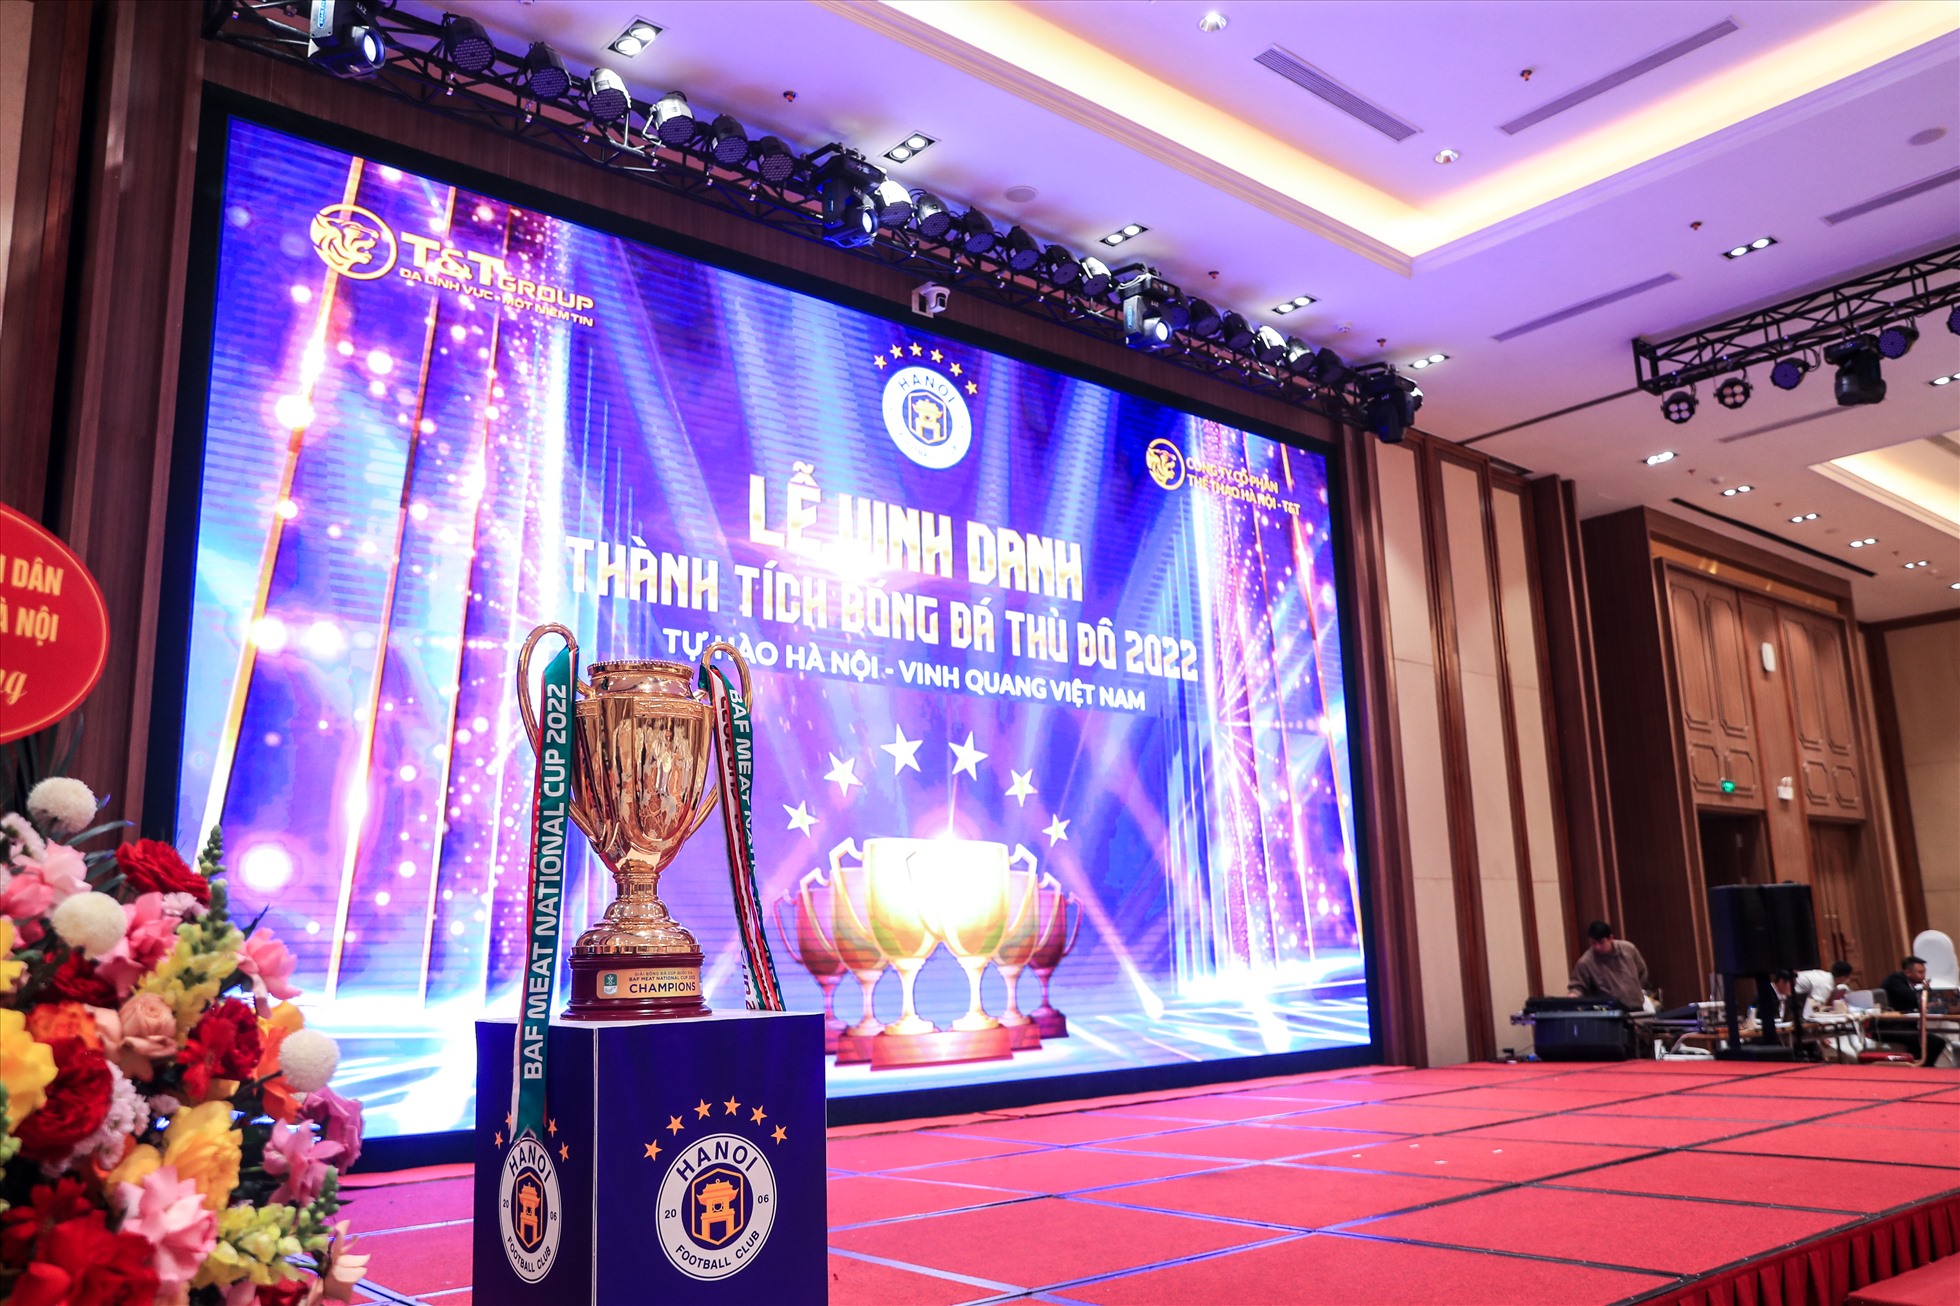 Sau khi giành chức vô địch V.League 2022, câu lạc bộ Hà Nội đã tổ chức lễ vinh danh và nhận bằng khen từ thành phố Hà Nội.